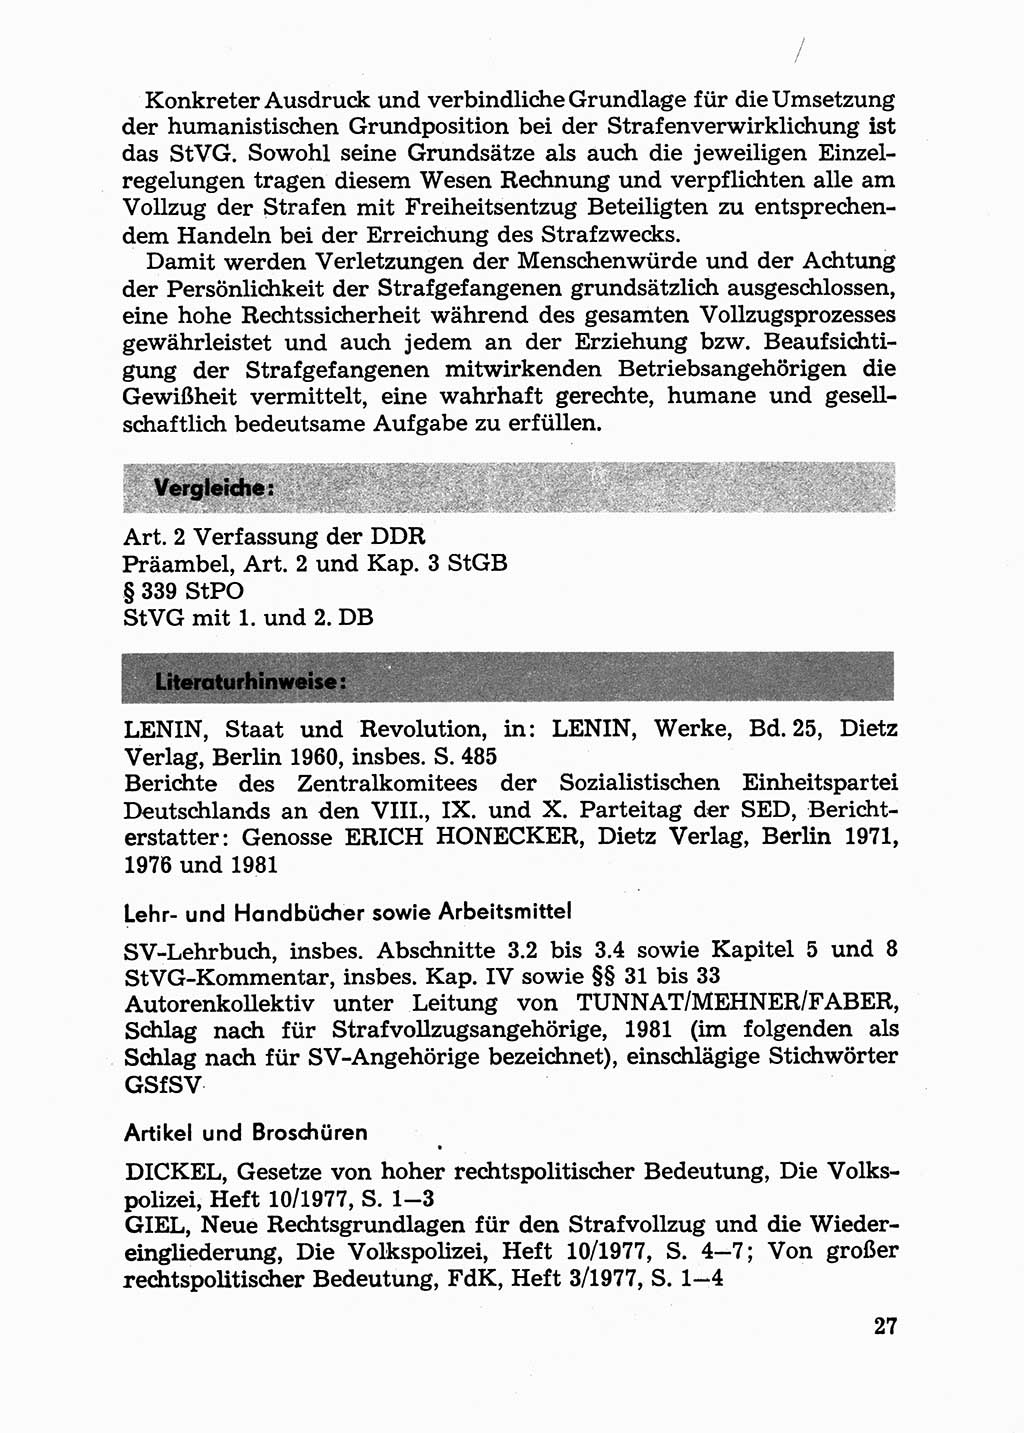 Handbuch für Betriebsangehörige, Abteilung Strafvollzug (SV) [Ministerium des Innern (MdI) Deutsche Demokratische Republik (DDR)] 1981, Seite 27 (Hb. BA Abt. SV MdI DDR 1981, S. 27)